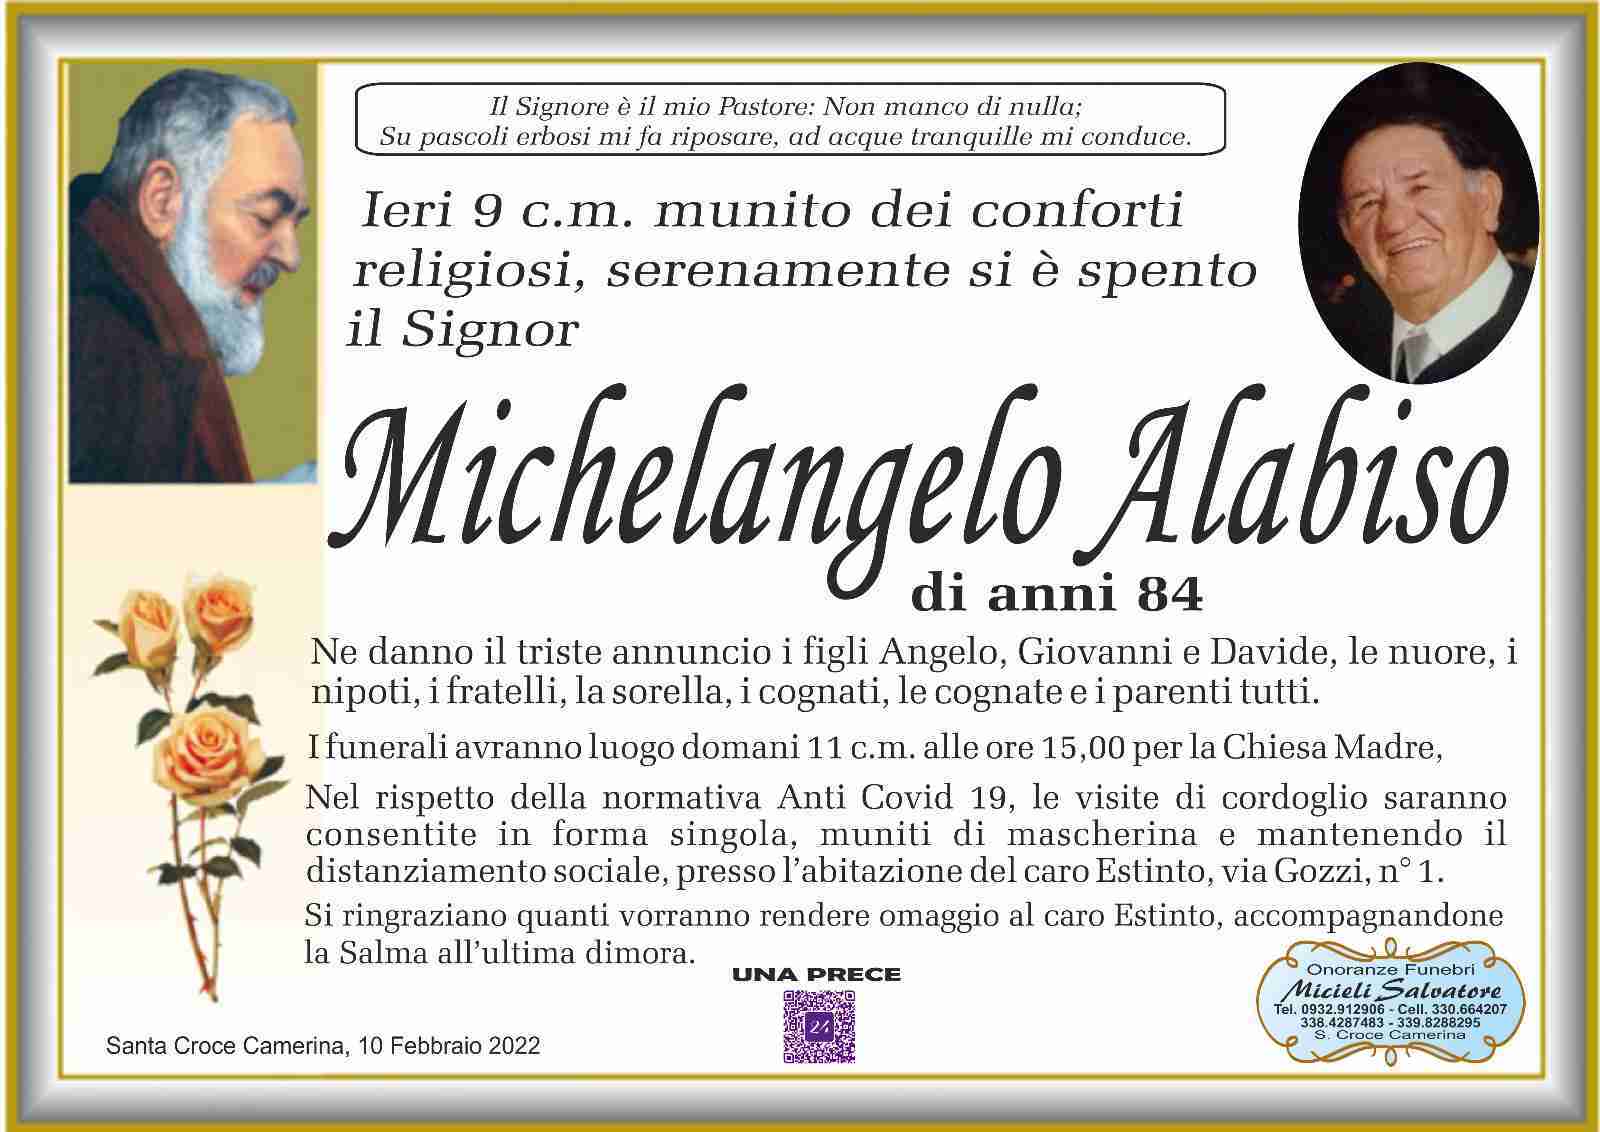 Michelangelo Alabiso